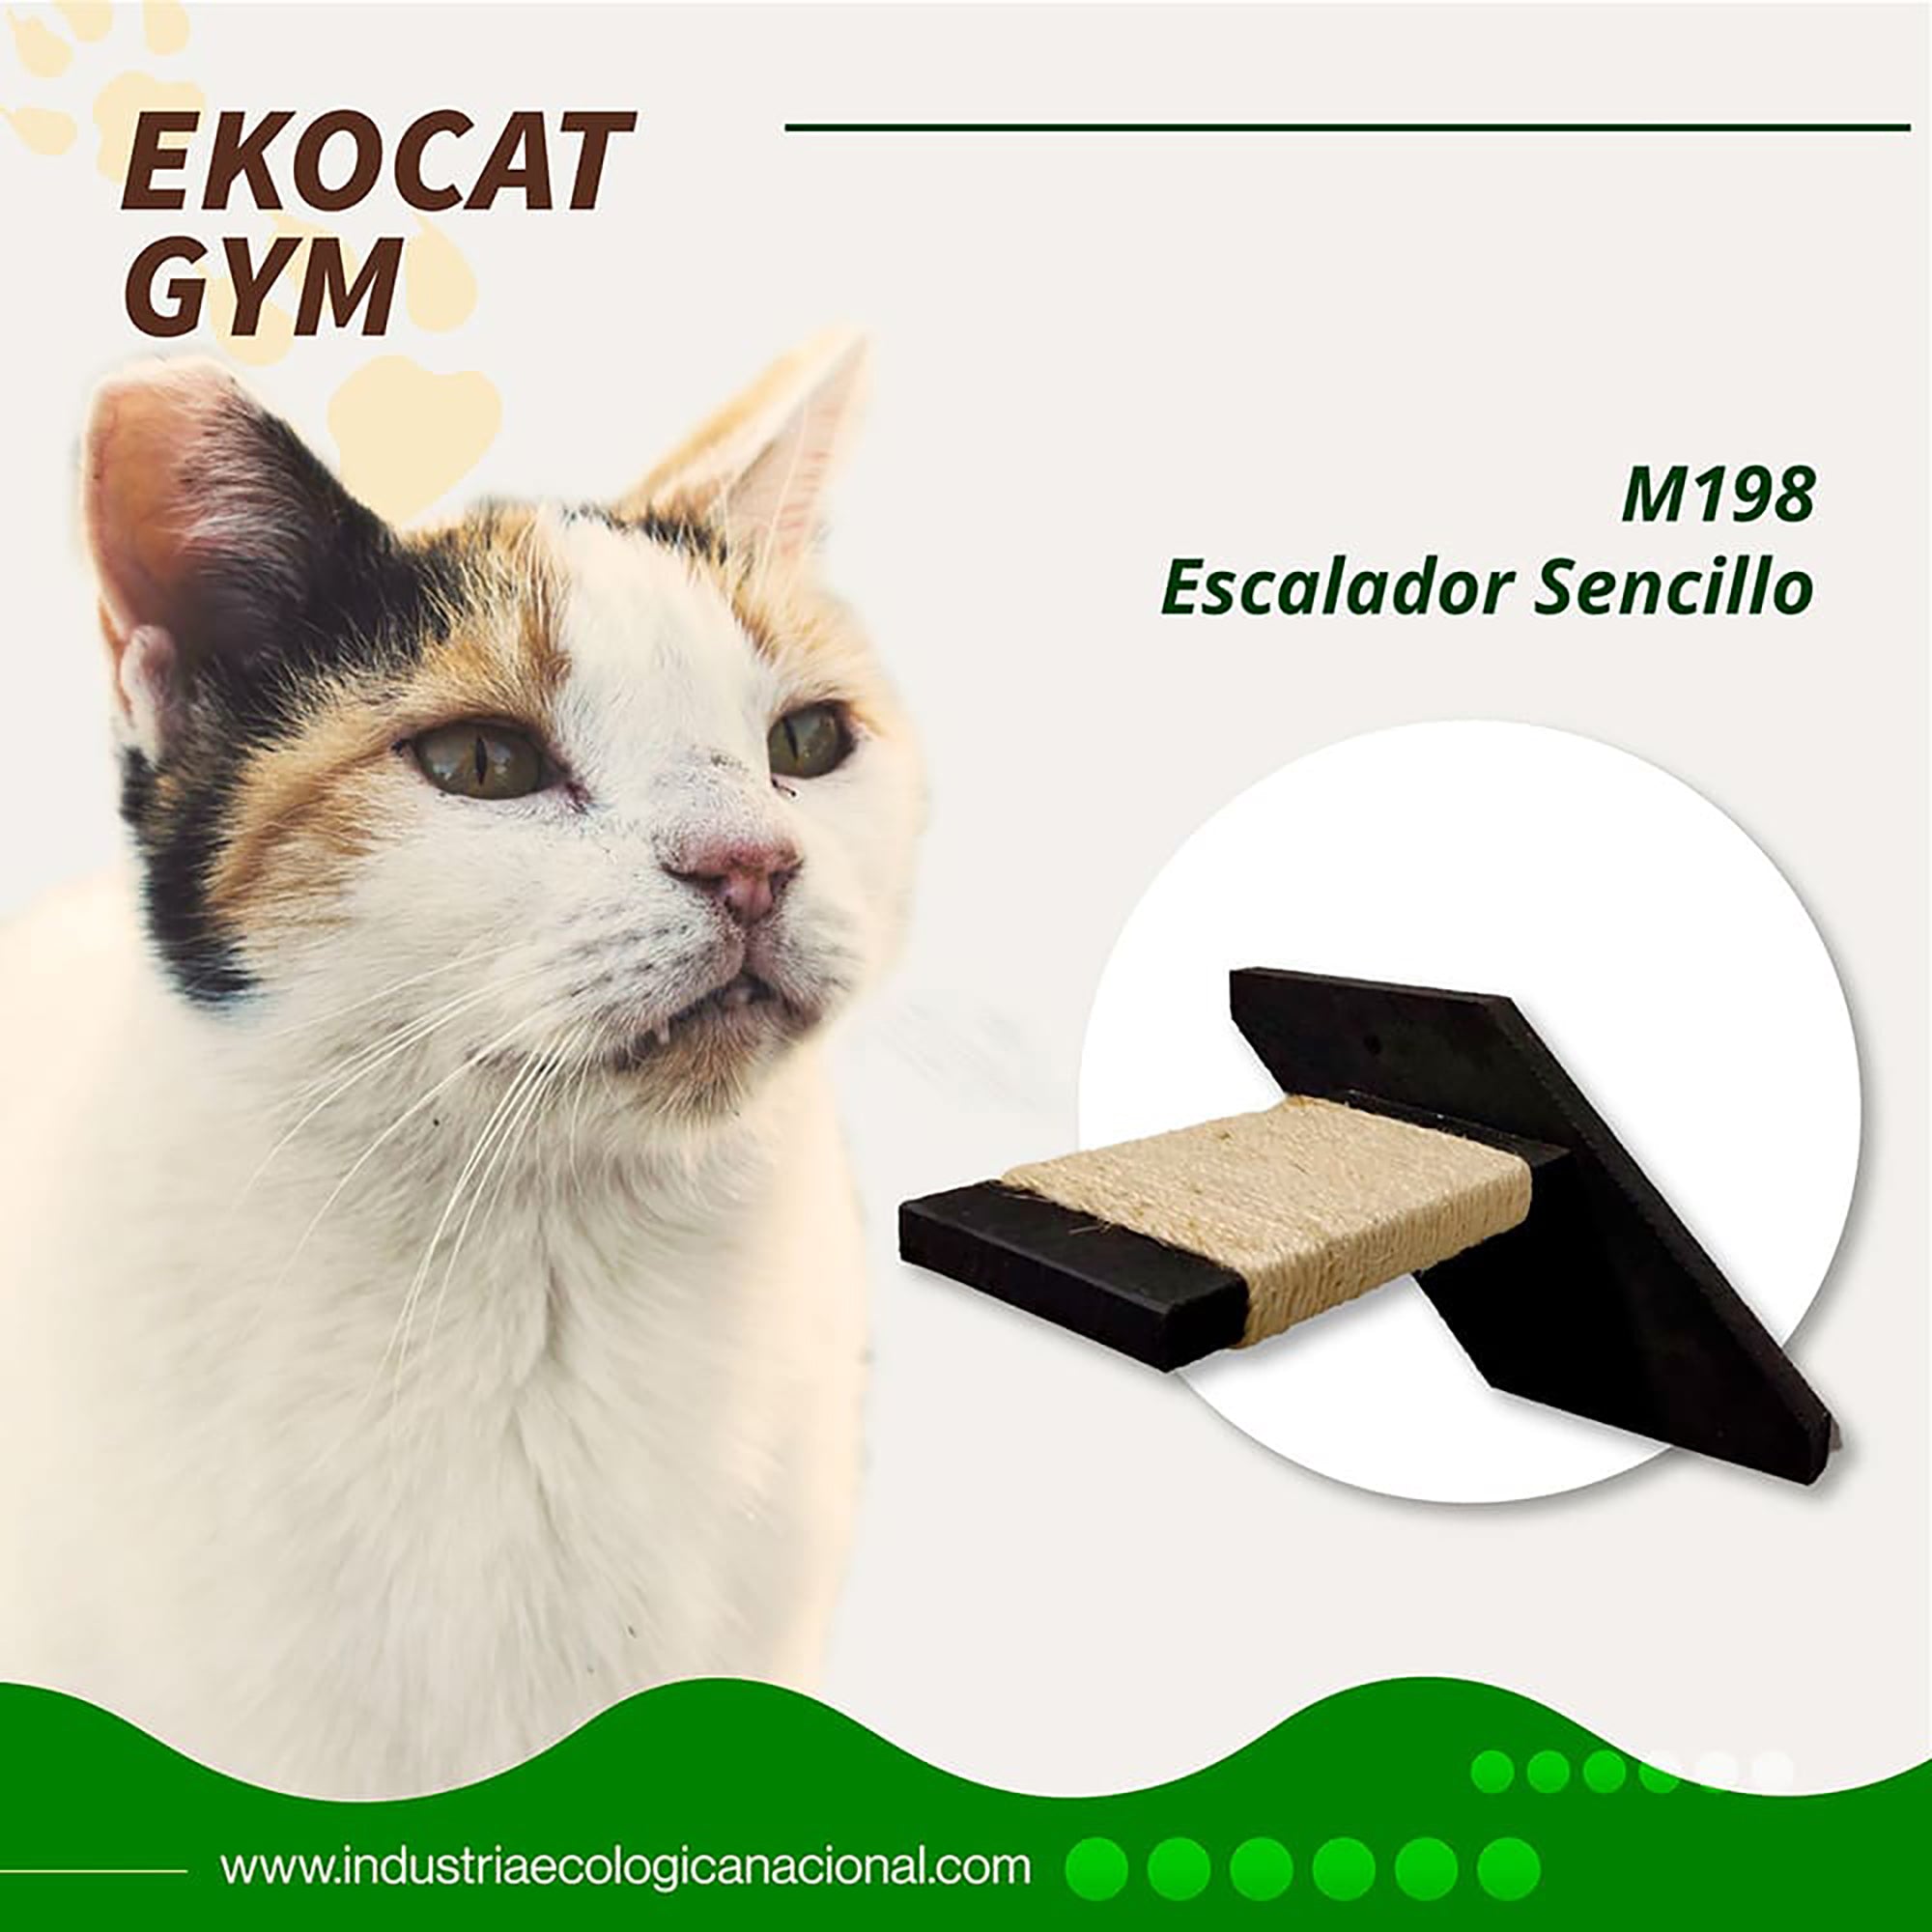 EKOCAT: Escalador sencillo para gatos